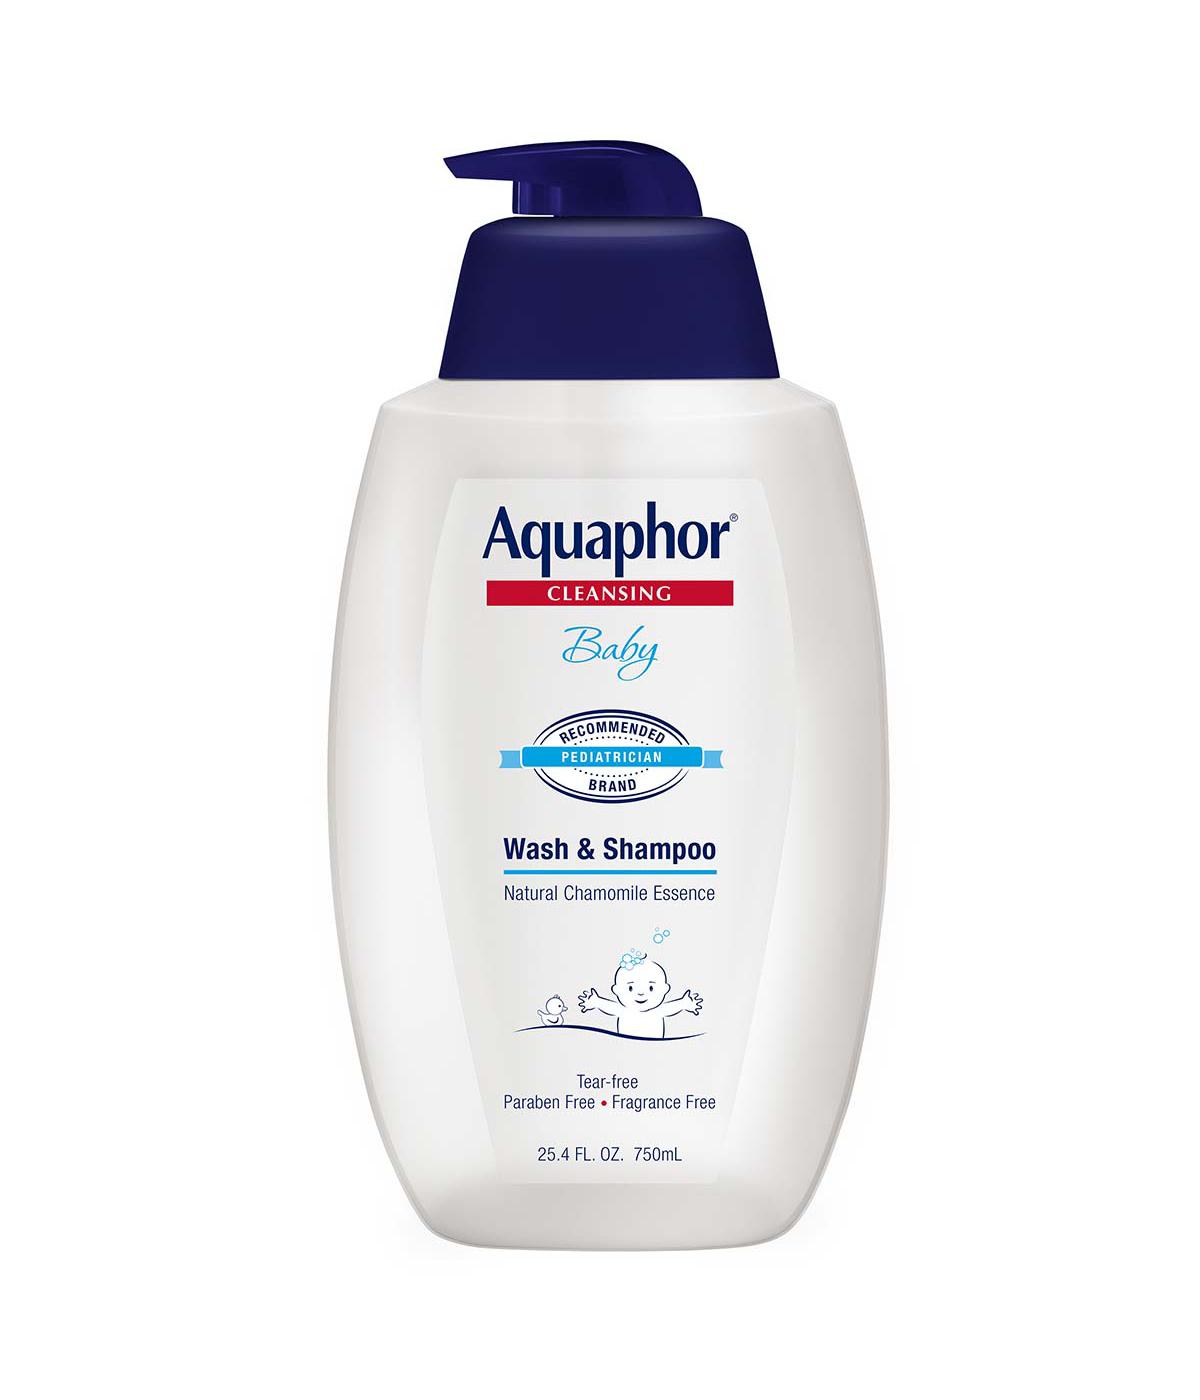 Aquaphor Baby Wash & Shampoo; image 1 of 2